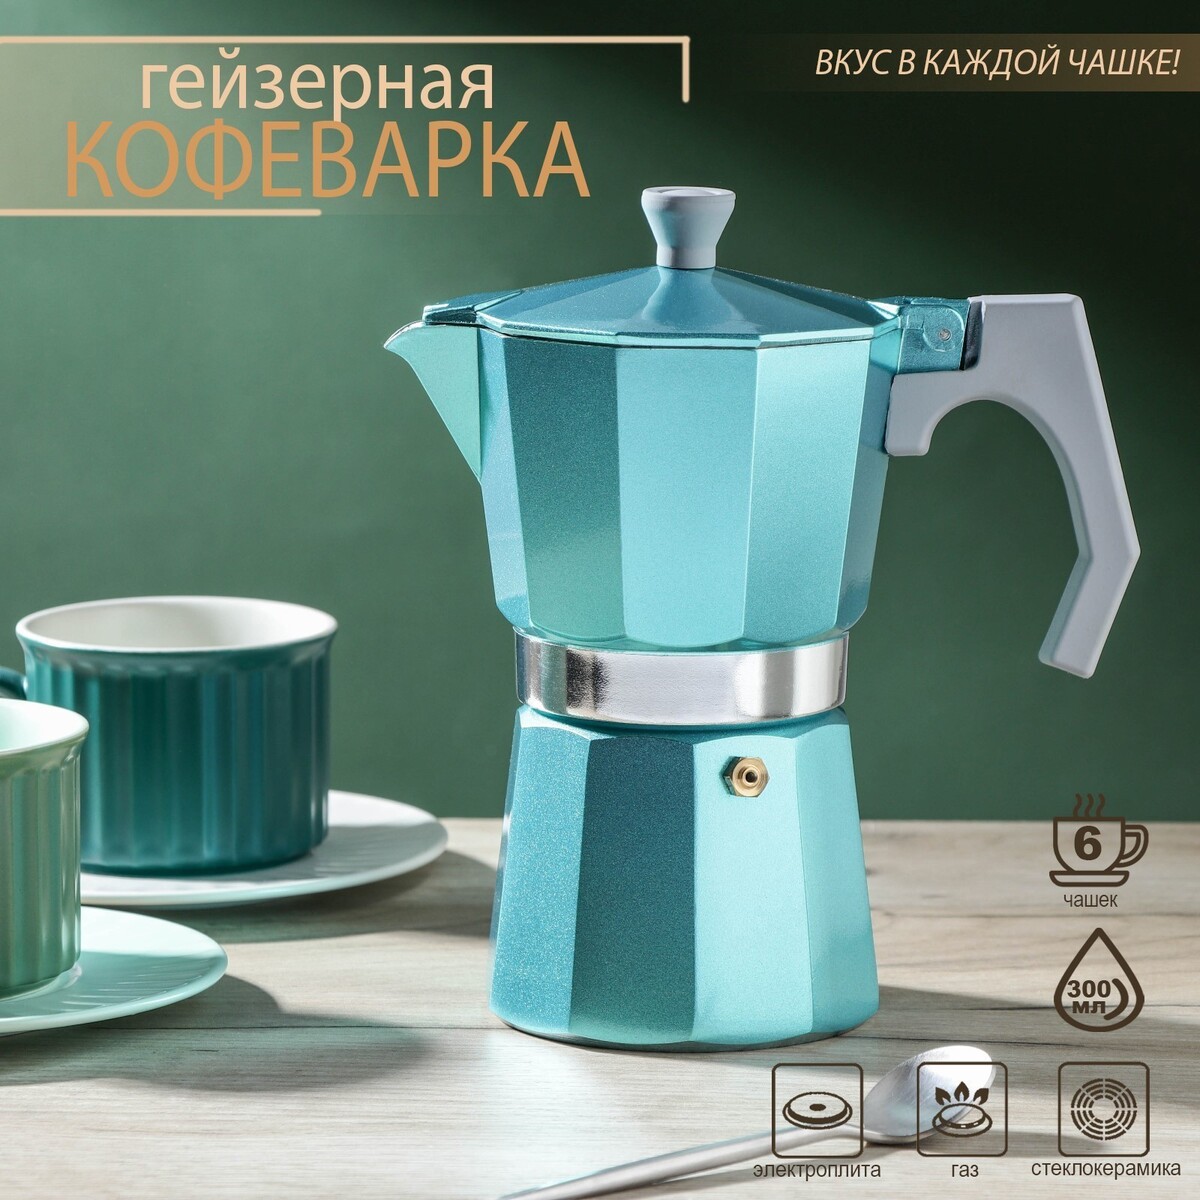 Кофеварка гейзерная magistro azure, на 6 чашек, 300 мл кофеварка гейзерная 330 мл vinzer latte nero 6 чашек